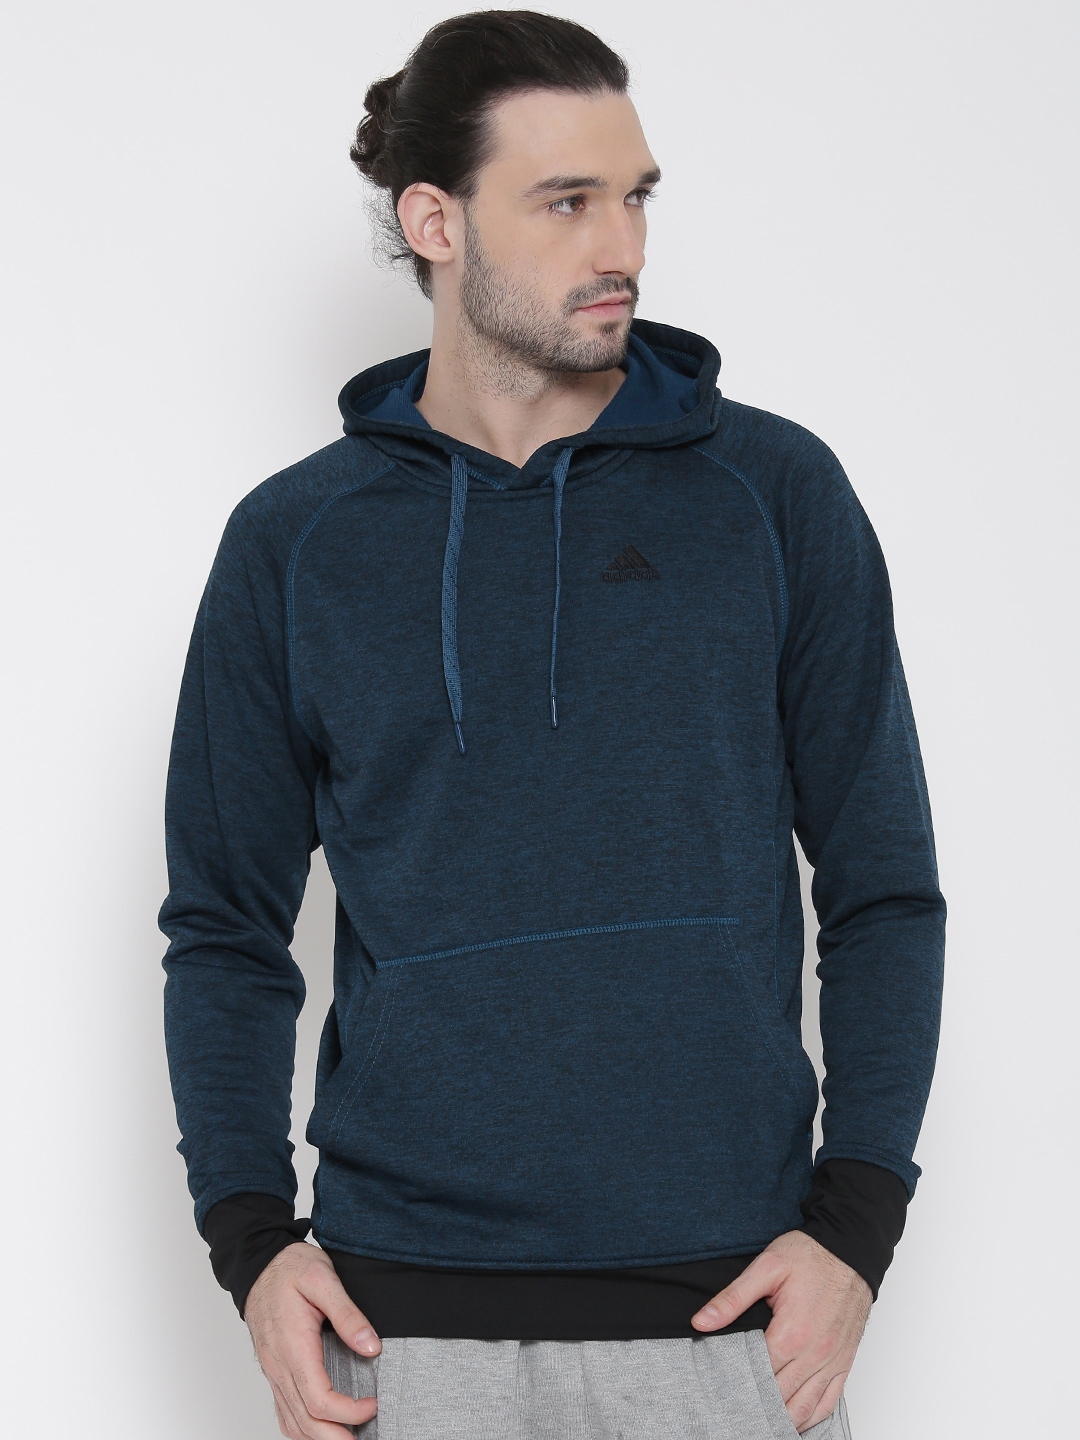 Buy ADIDAS Teal Blue WNTOFF Hooded Training Sweatshirt - Sweatshirts ...